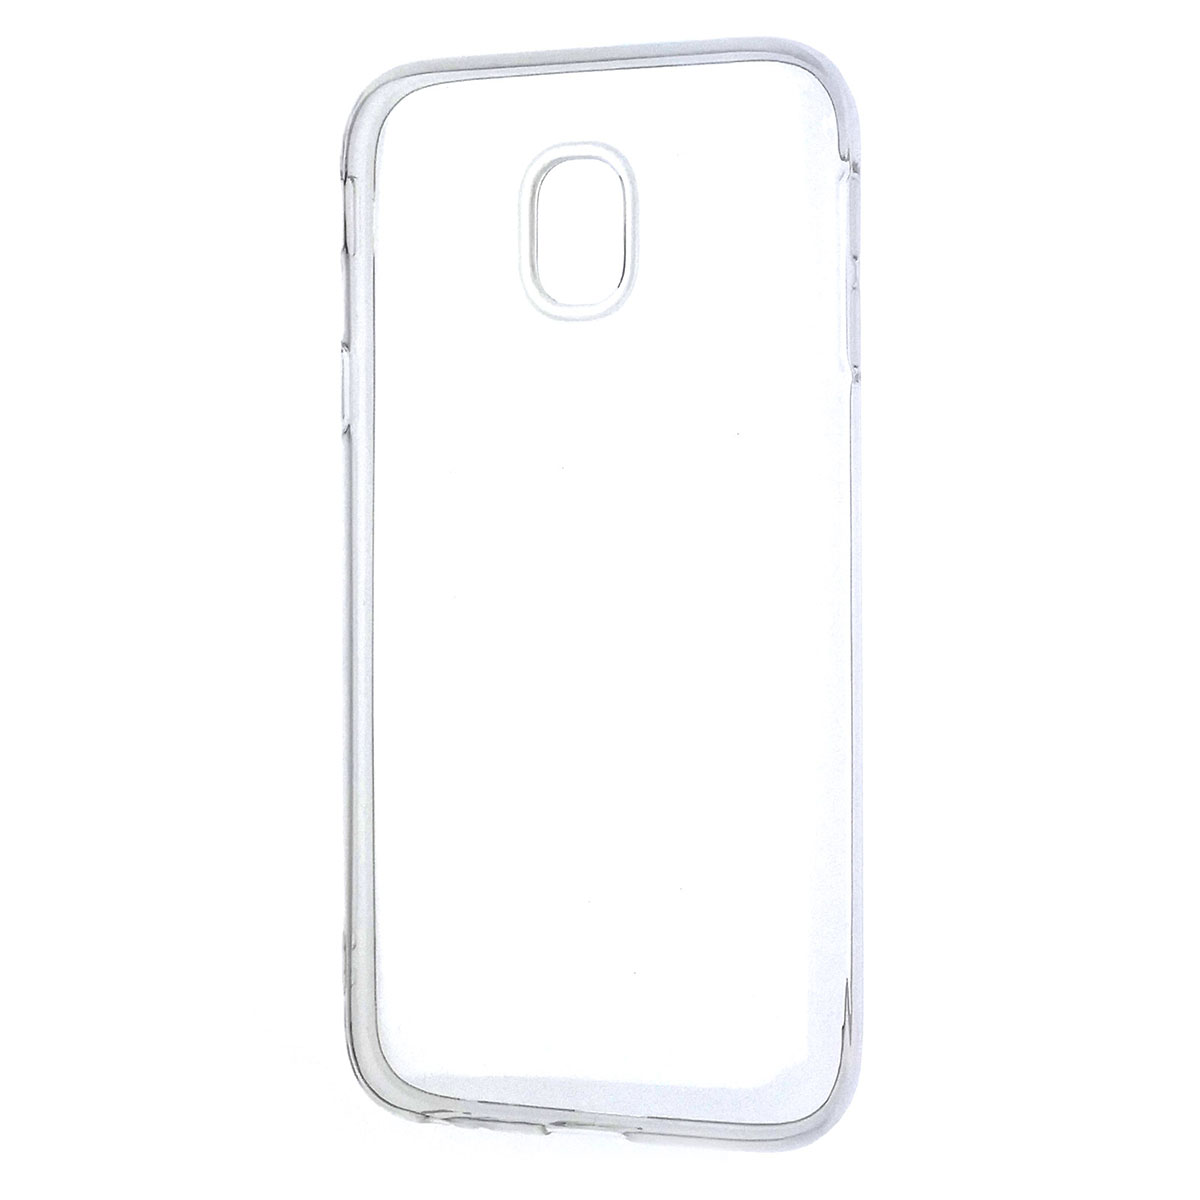 Чехол накладка J-Case THIN для SAMSUNG Galaxy J3 2017 (SM-J330), силикон, цвет прозрачный.